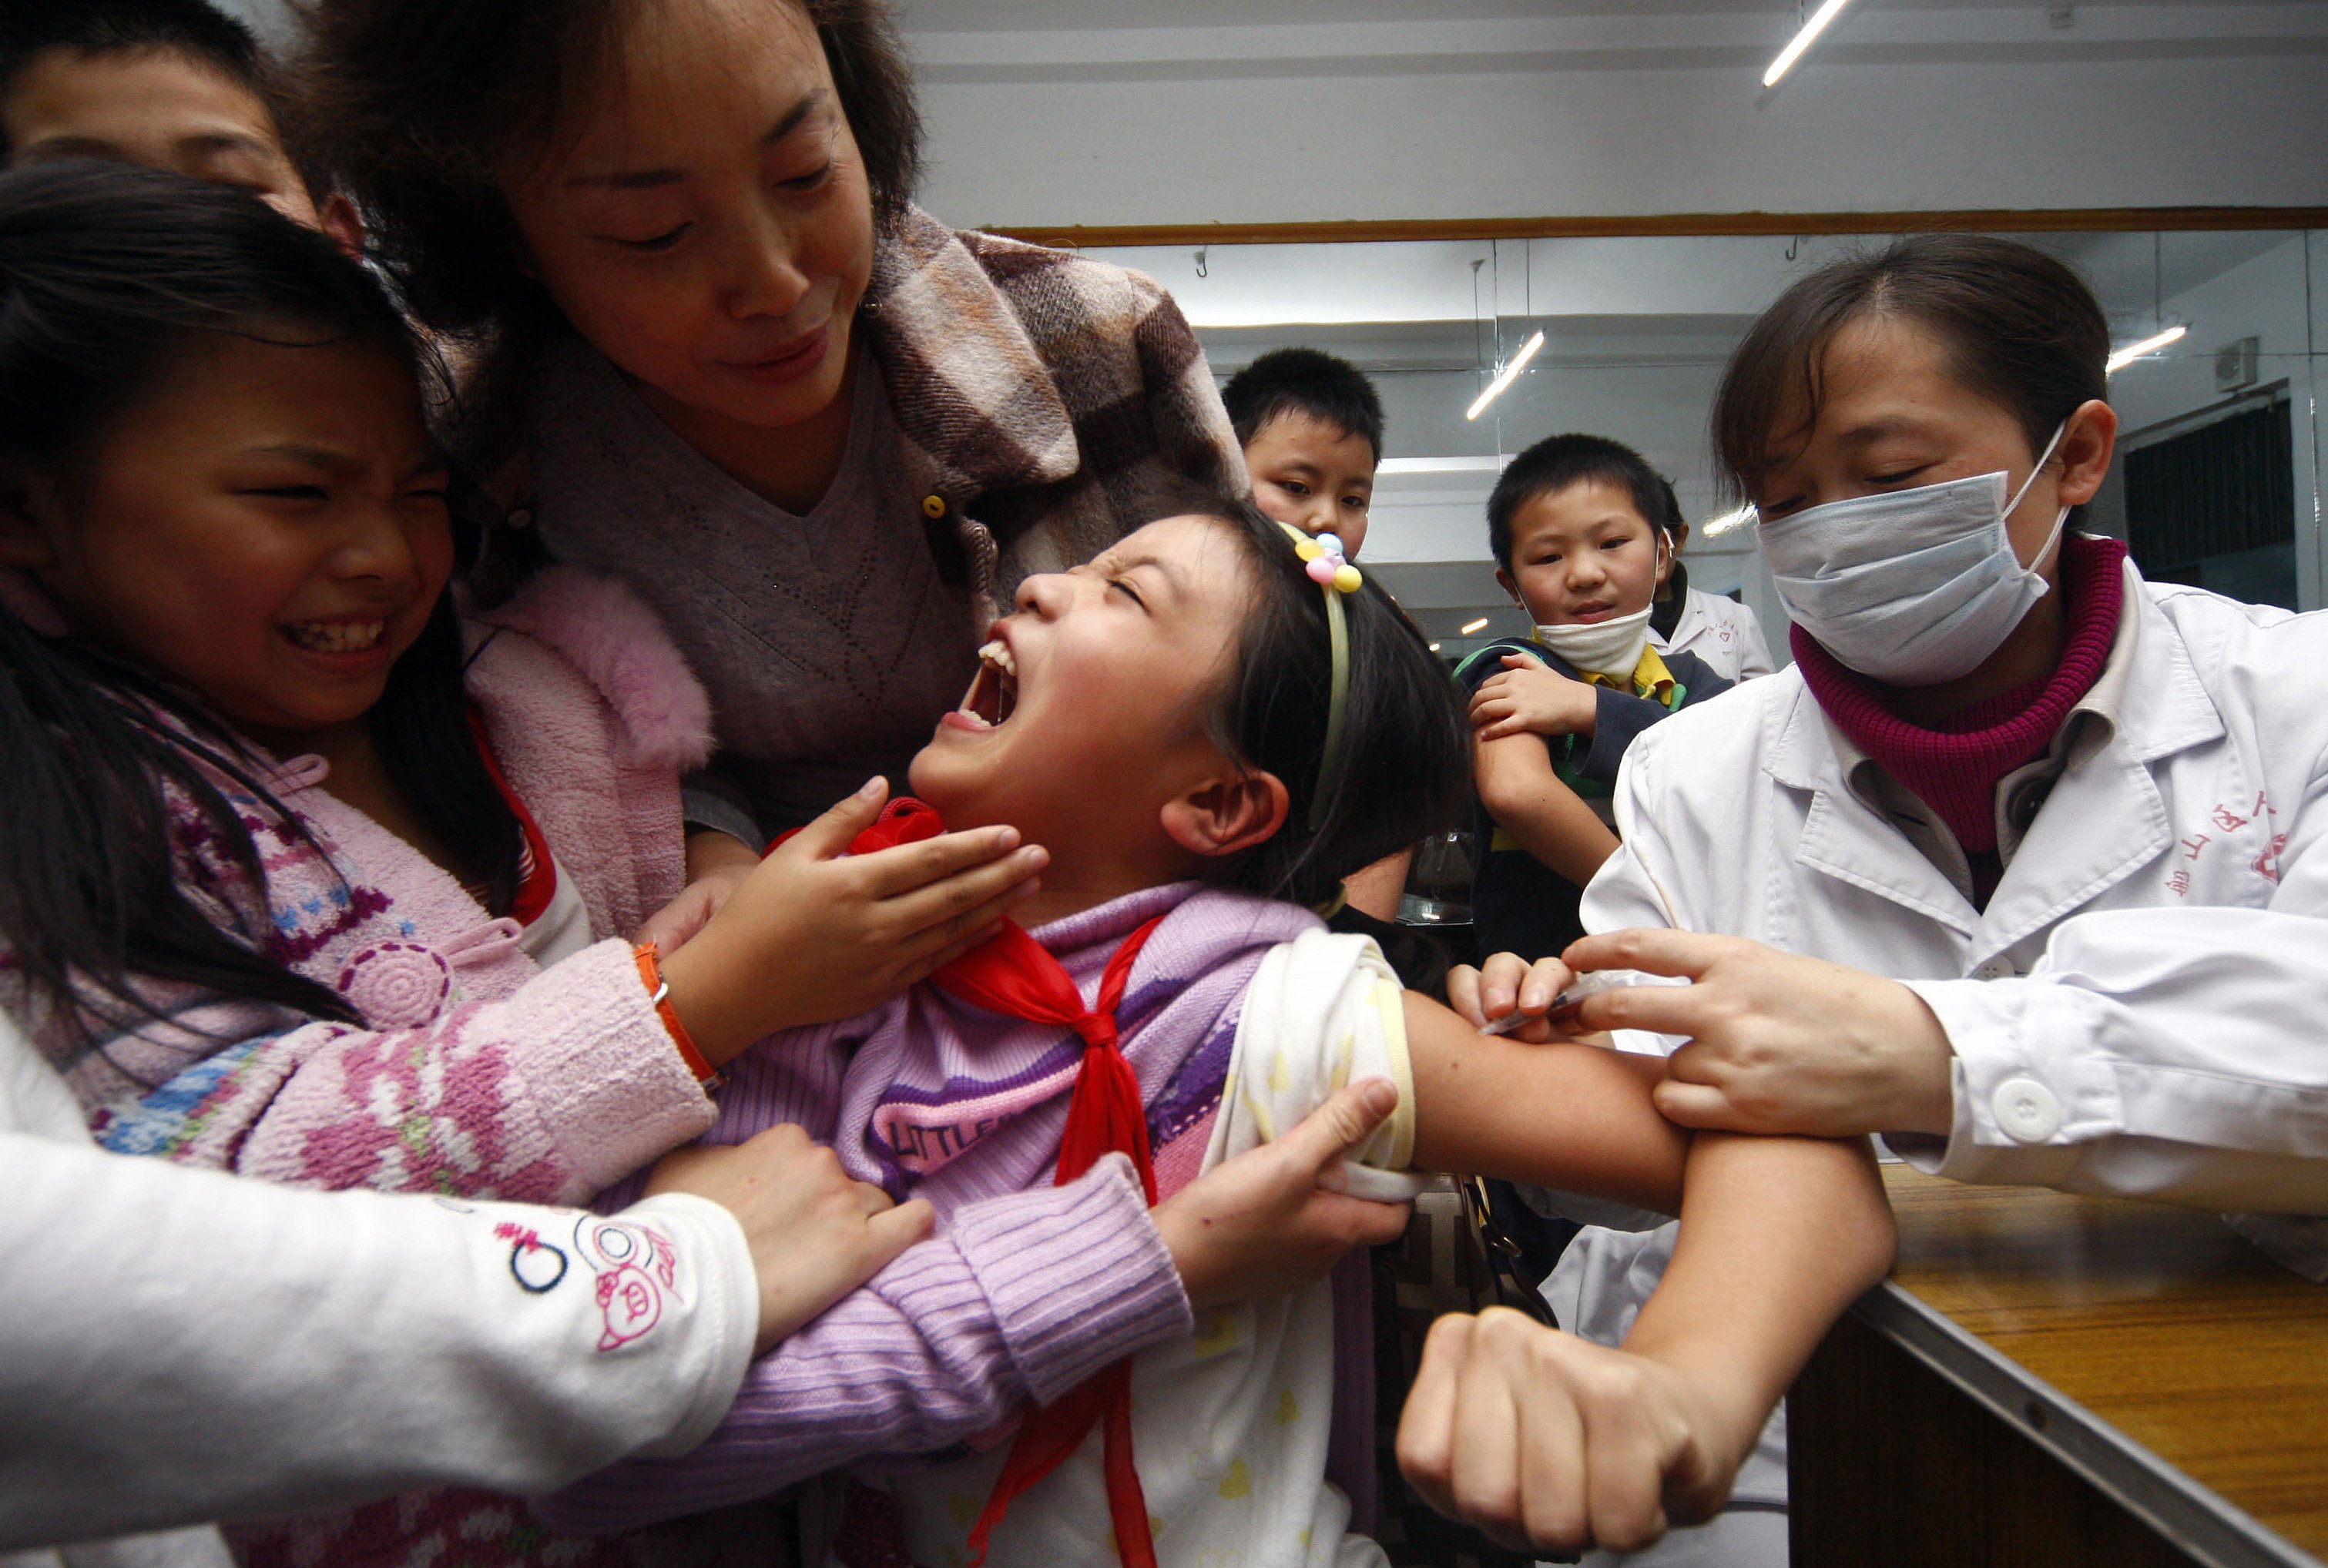 Κίνα: Ερευνες για εμβόλιο που πιθανόν προκάλεσε το θάνατο 7 παιδιών